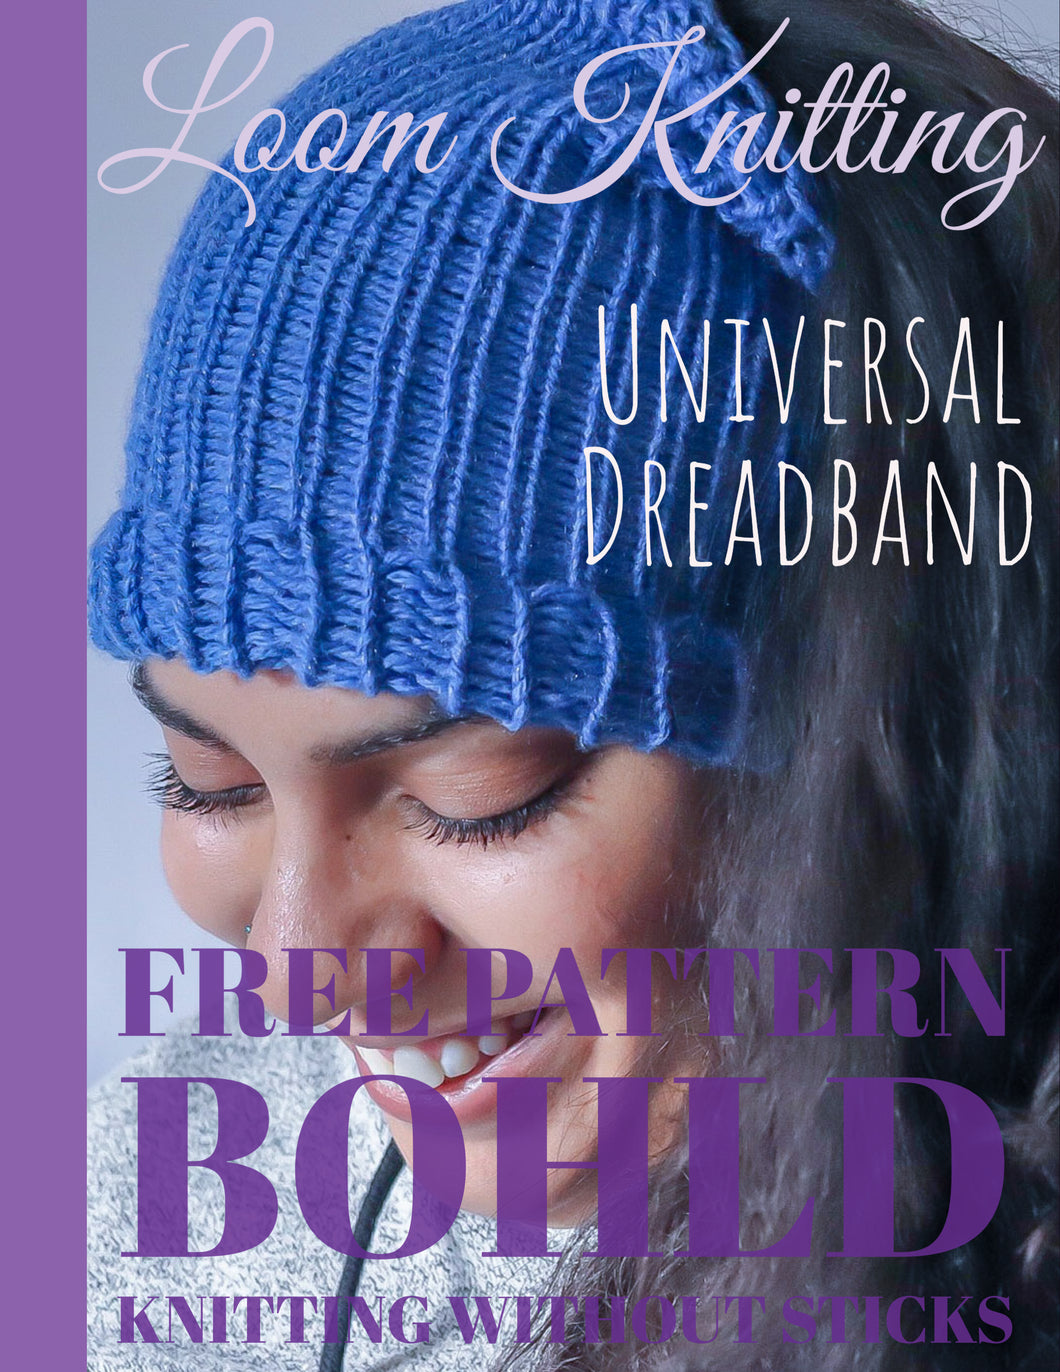 Loom Knit Universal Dreadband